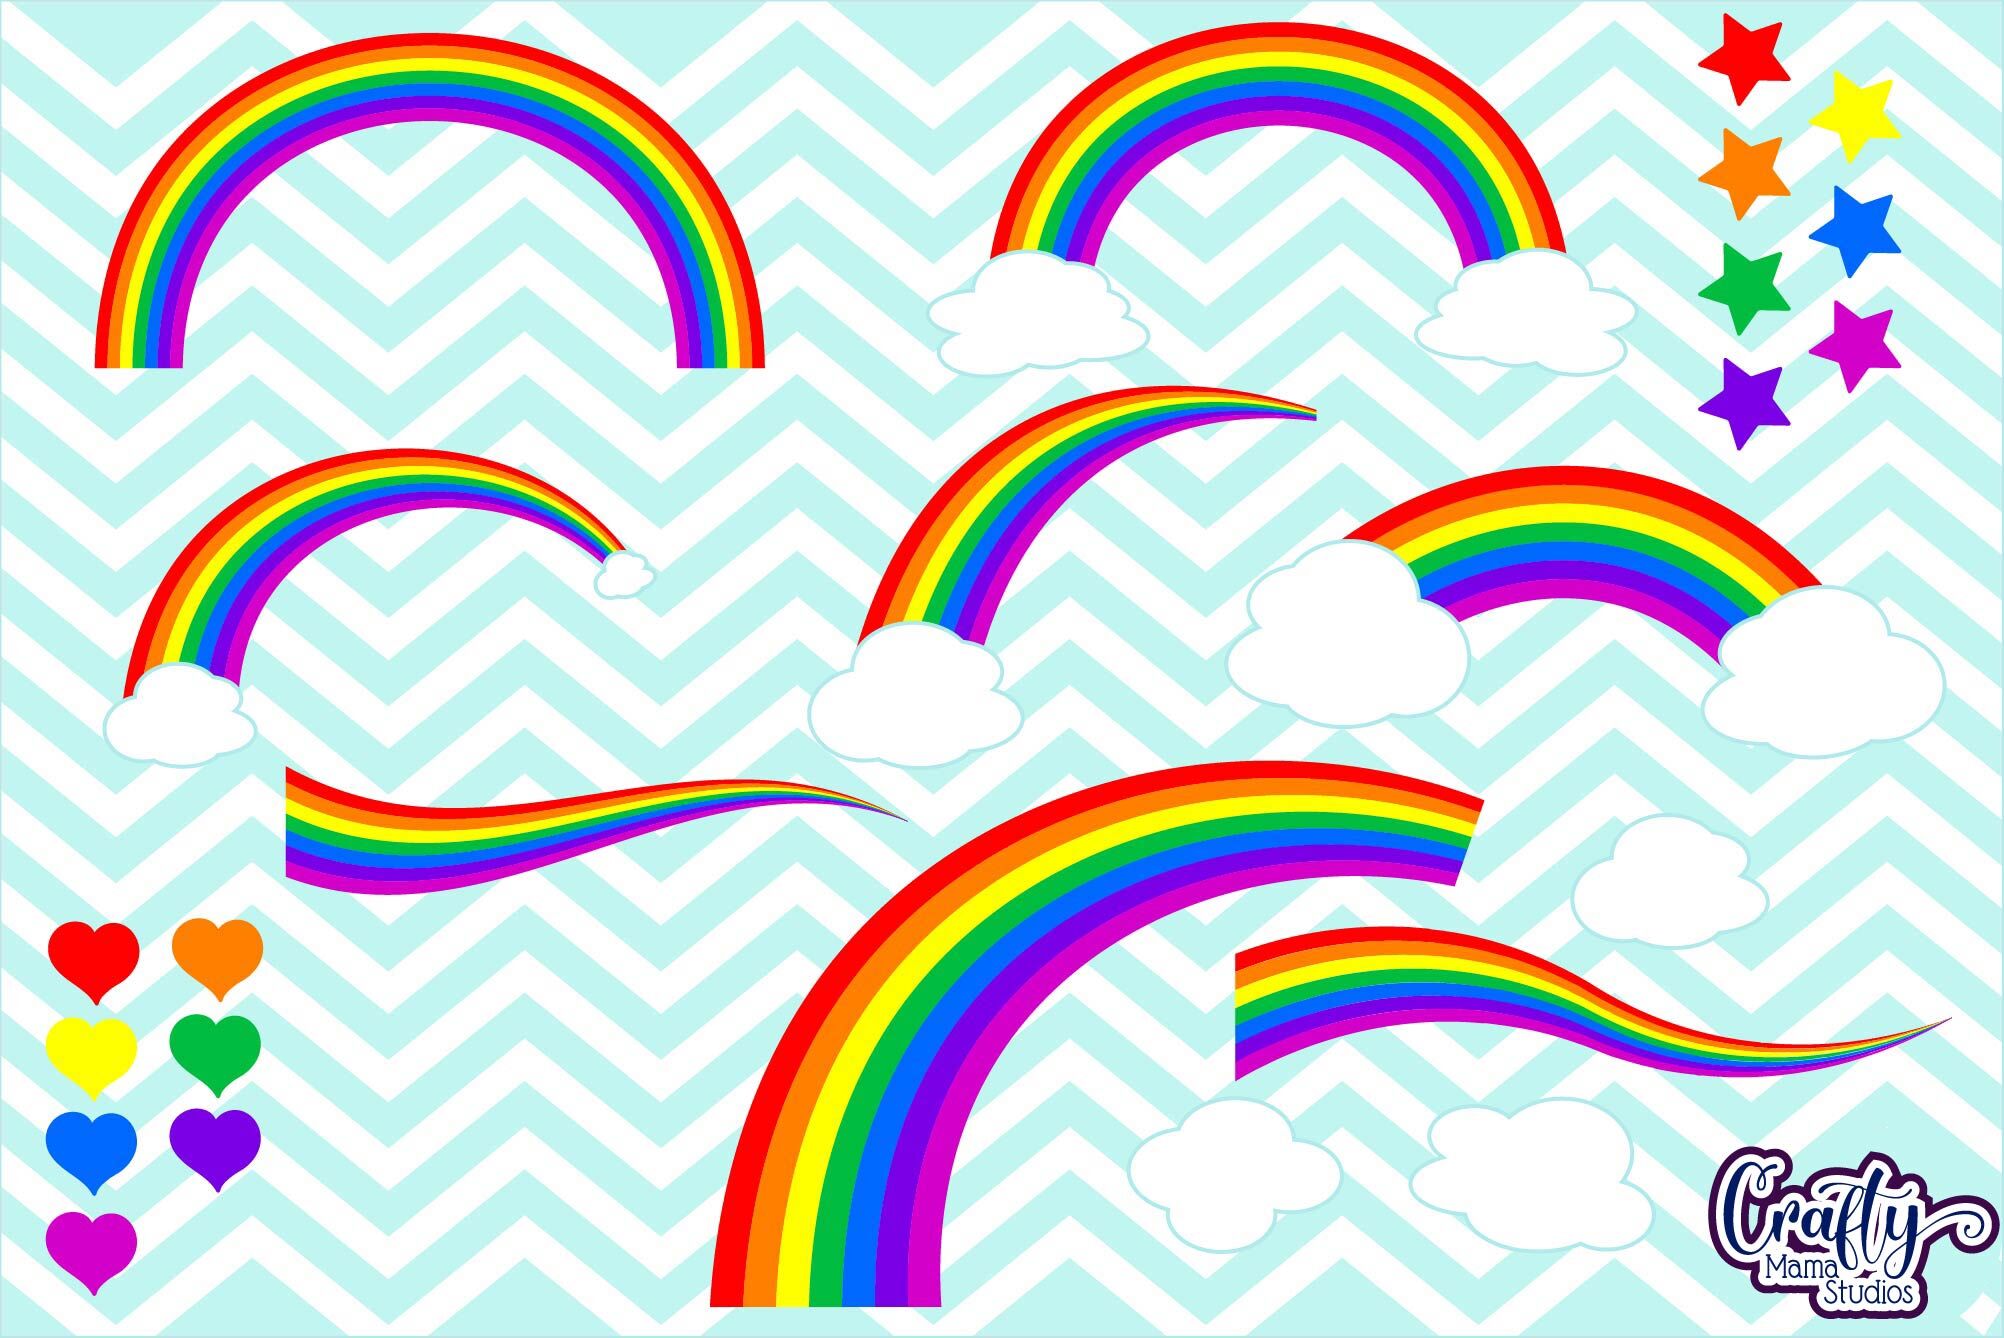 Rainbow Svg Rainbow Clipart Heart Cloud Star Clip Art By Crafty Mama Studios Thehungryjpeg Com